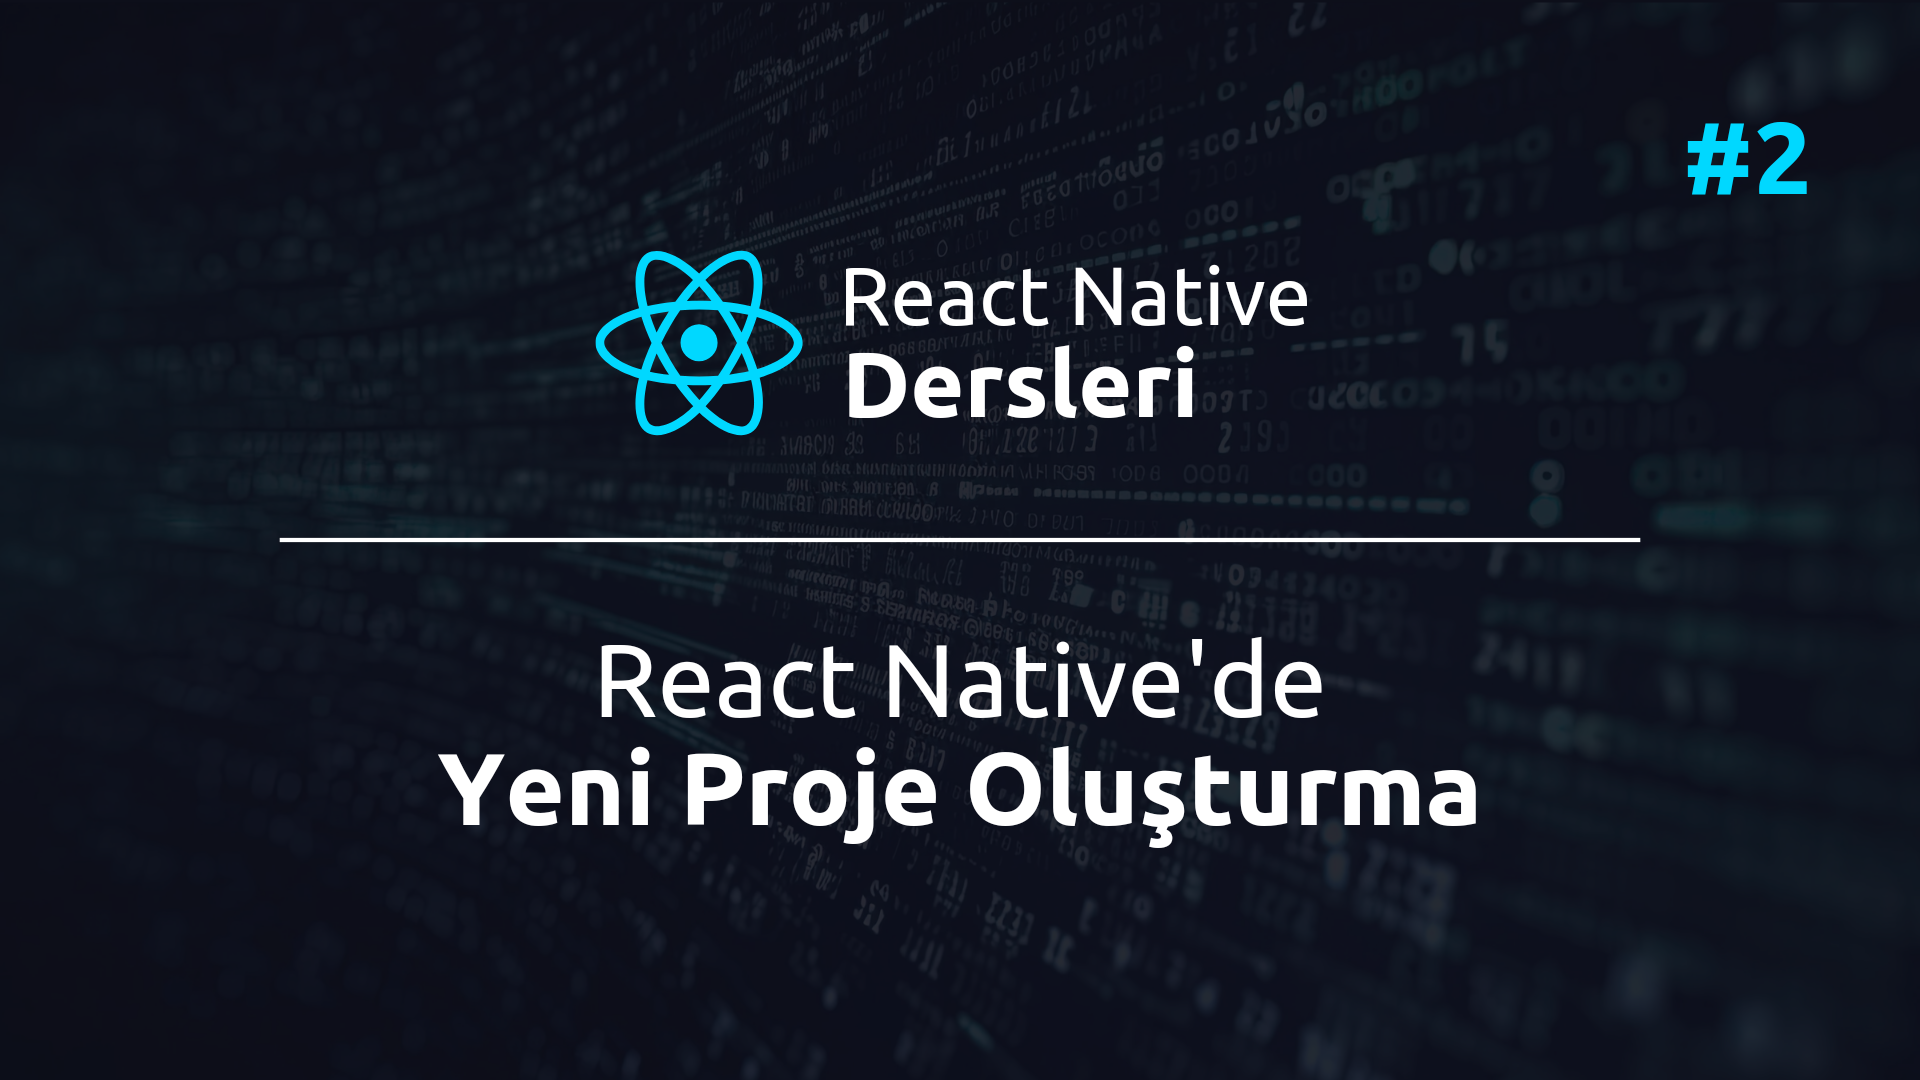 React Native'de proje oluşturma adımları ve dersleri hakkında kapsamlı bilgi. Adım adım React Native projesi nasıl başlatılır öğrenin.